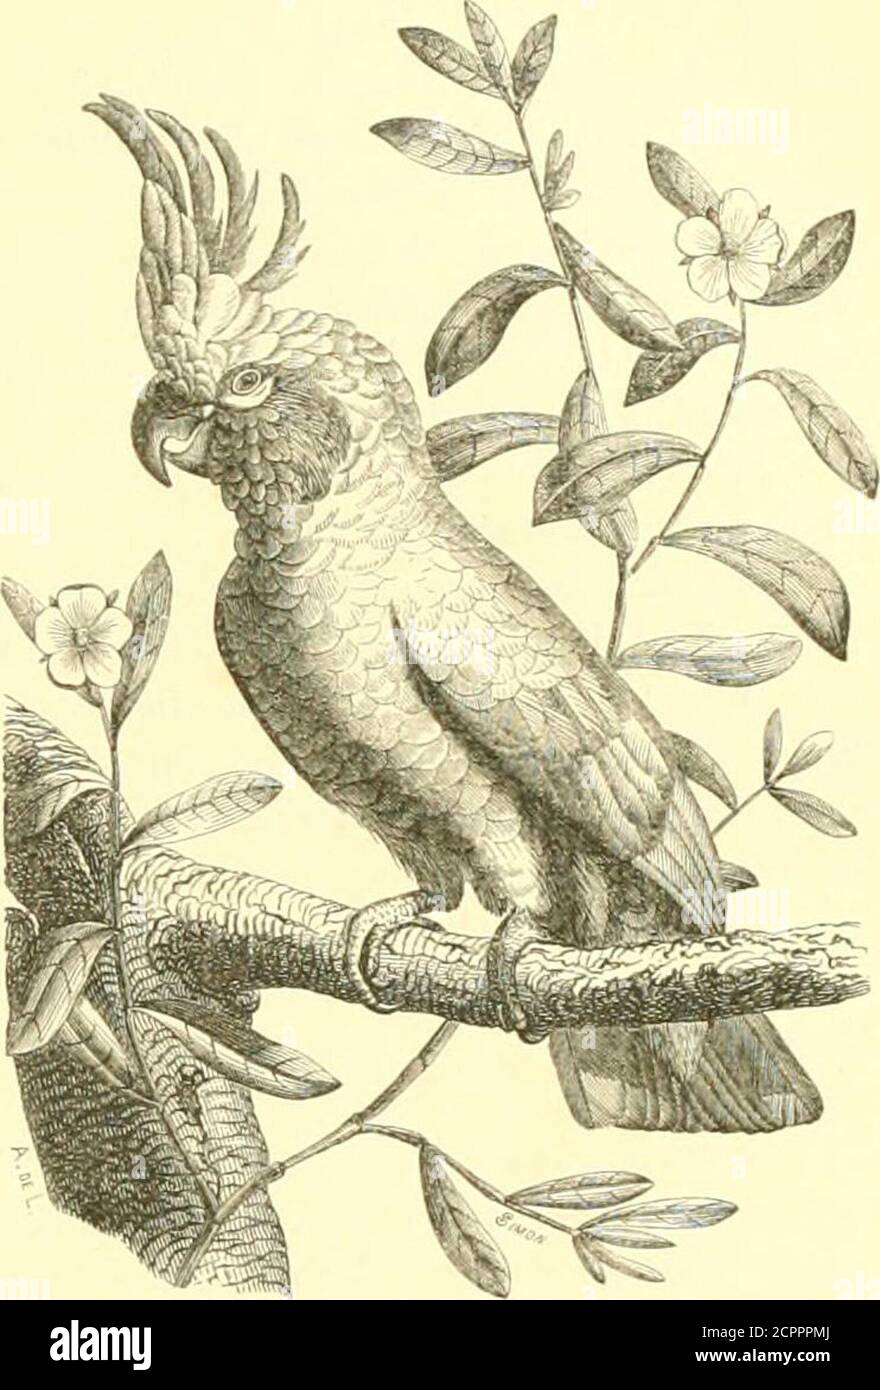 . Histoire naturelle des oiseaux : suivant a classification de Isidore Geoffroy-Saint-Hilaire ; avec l'indication de leurs moeurs et de leurs rapports avec les arts, le commerce et l'agriculture . f-V; y ////VF //f/. / r/, A. &GT; f///f /7 )• MIM,K DKS PSITT VCIDKS. I().&GT; i[l ;irr(iiiiiiiiiiTiTiiilit i-;ir,lii. ciiii-iMiiV, un |U (ciiaiiciri- au IkiuI : les narinepar les plumes du front; les ailes saigues ;la coute, le rée, le rée, le rée. Les Kakatoès sont des IMnM|uits des Indoet de lAustralie ; le fond de leur plumage estblanc, quelijuefois r Foto de stock